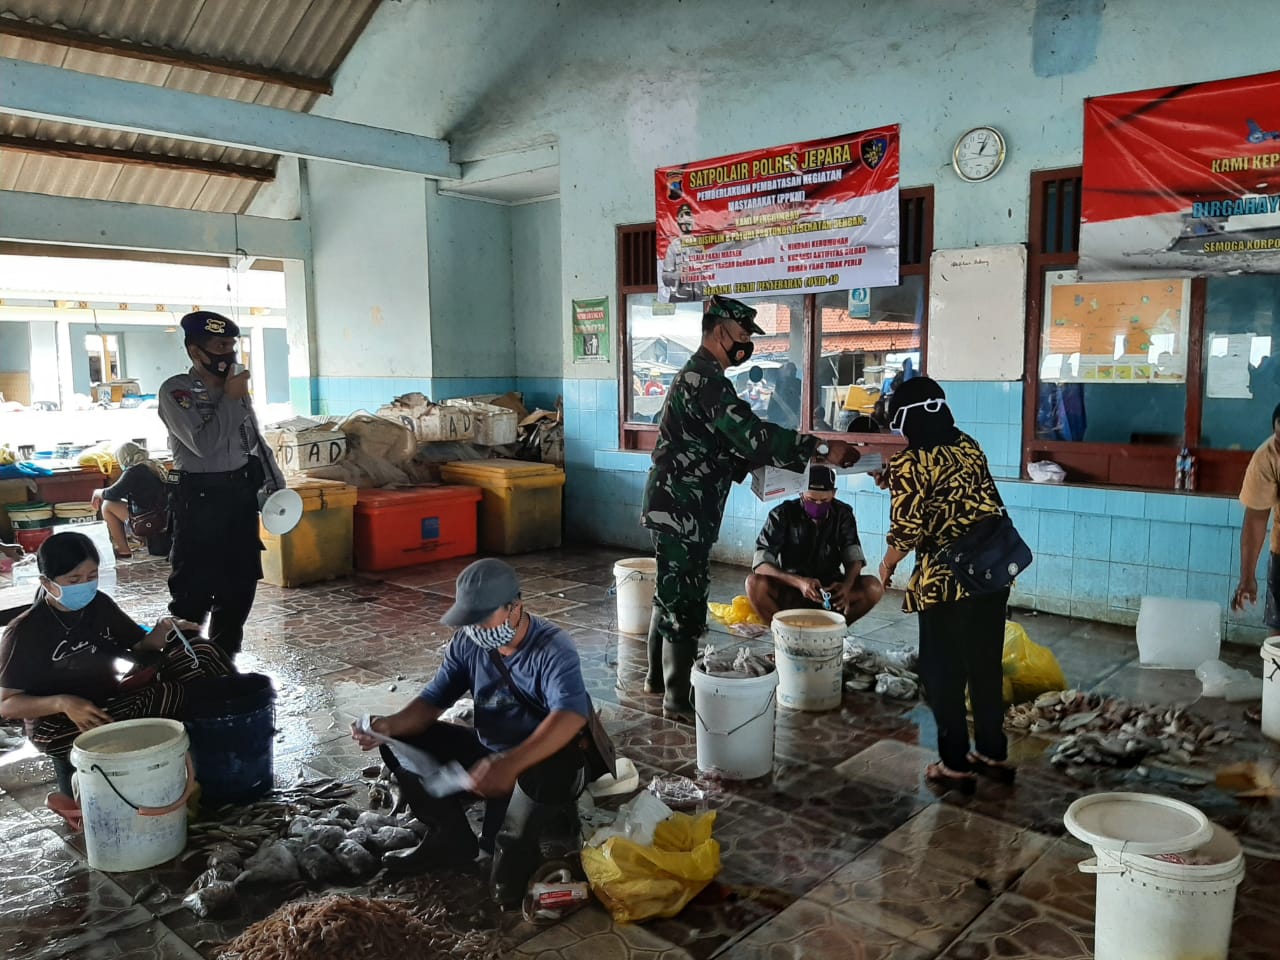 Posko Siaga Covid-19 Satpolair Polres Jepara, membagikan Masker di TPI Ujung Batu Jepara